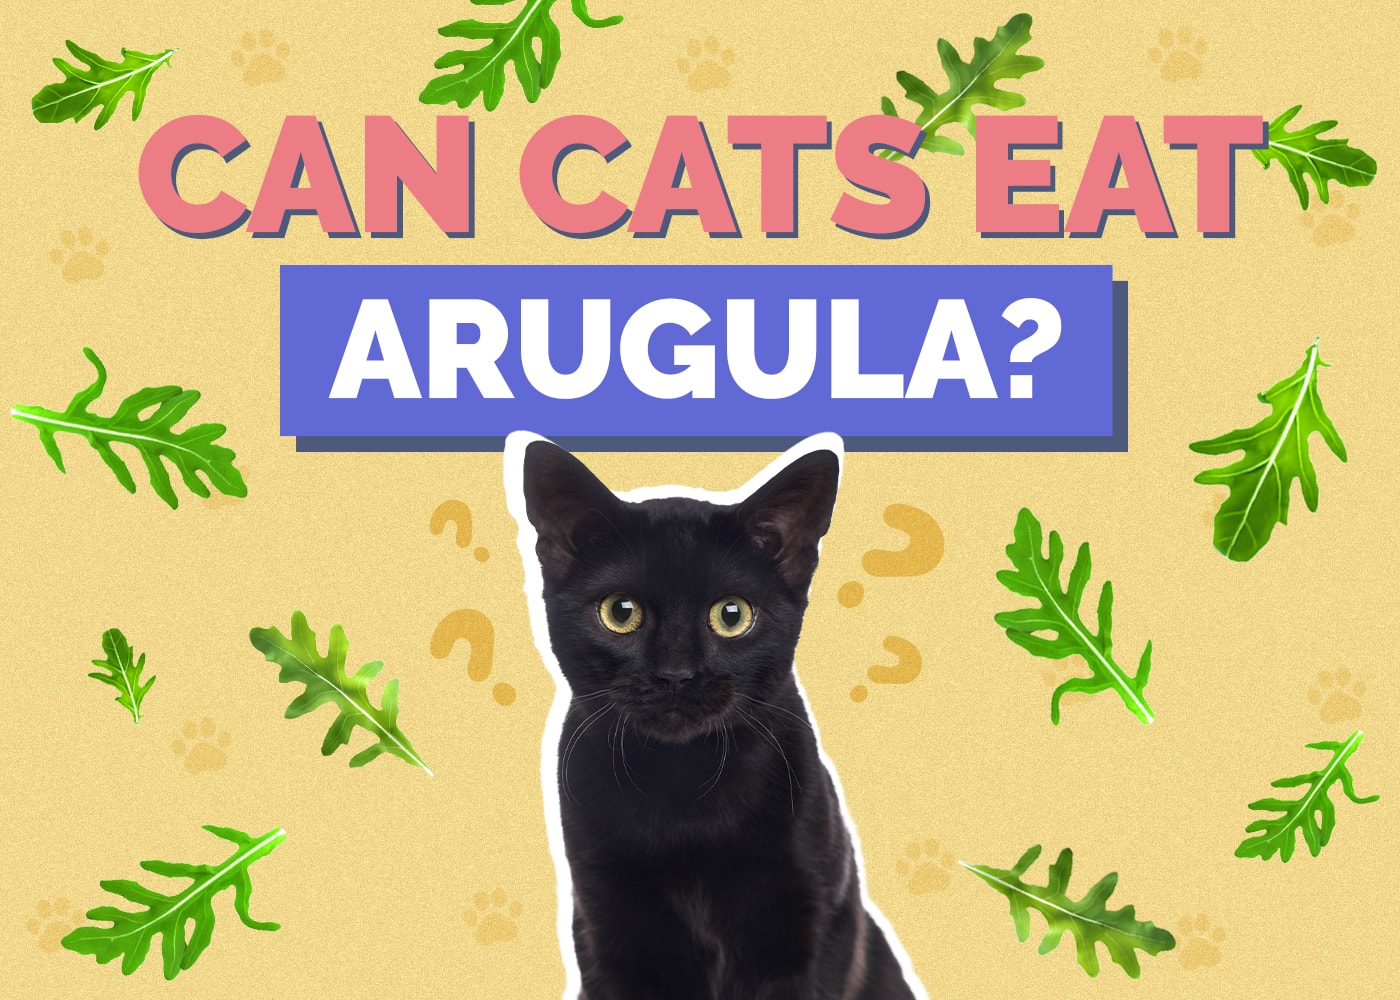 Can Cats Eat arugula